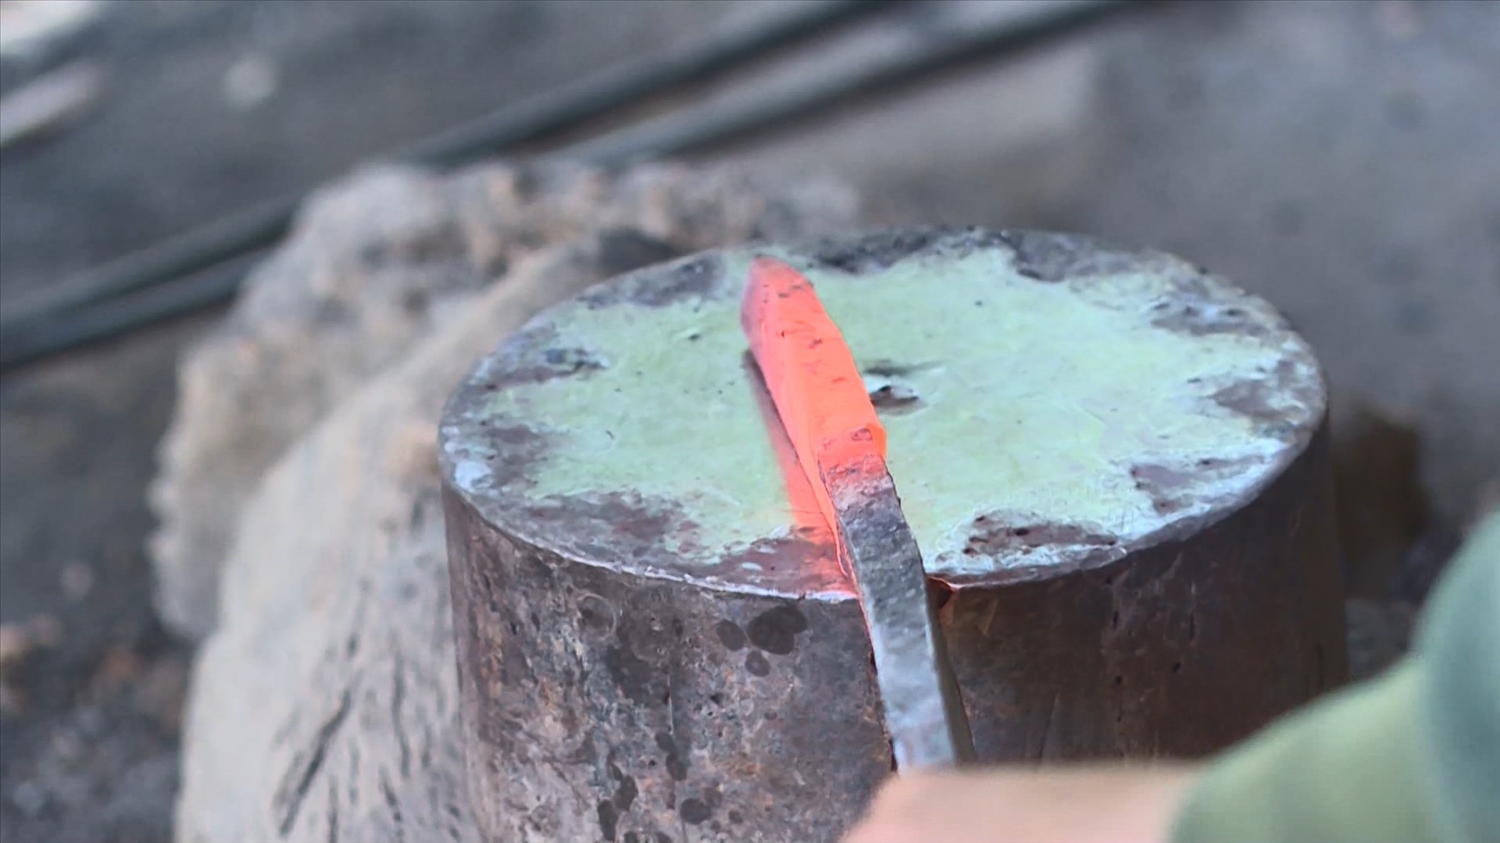 Thanh sắt phải được nung đỏ trong than củi và tán trên đe sắt